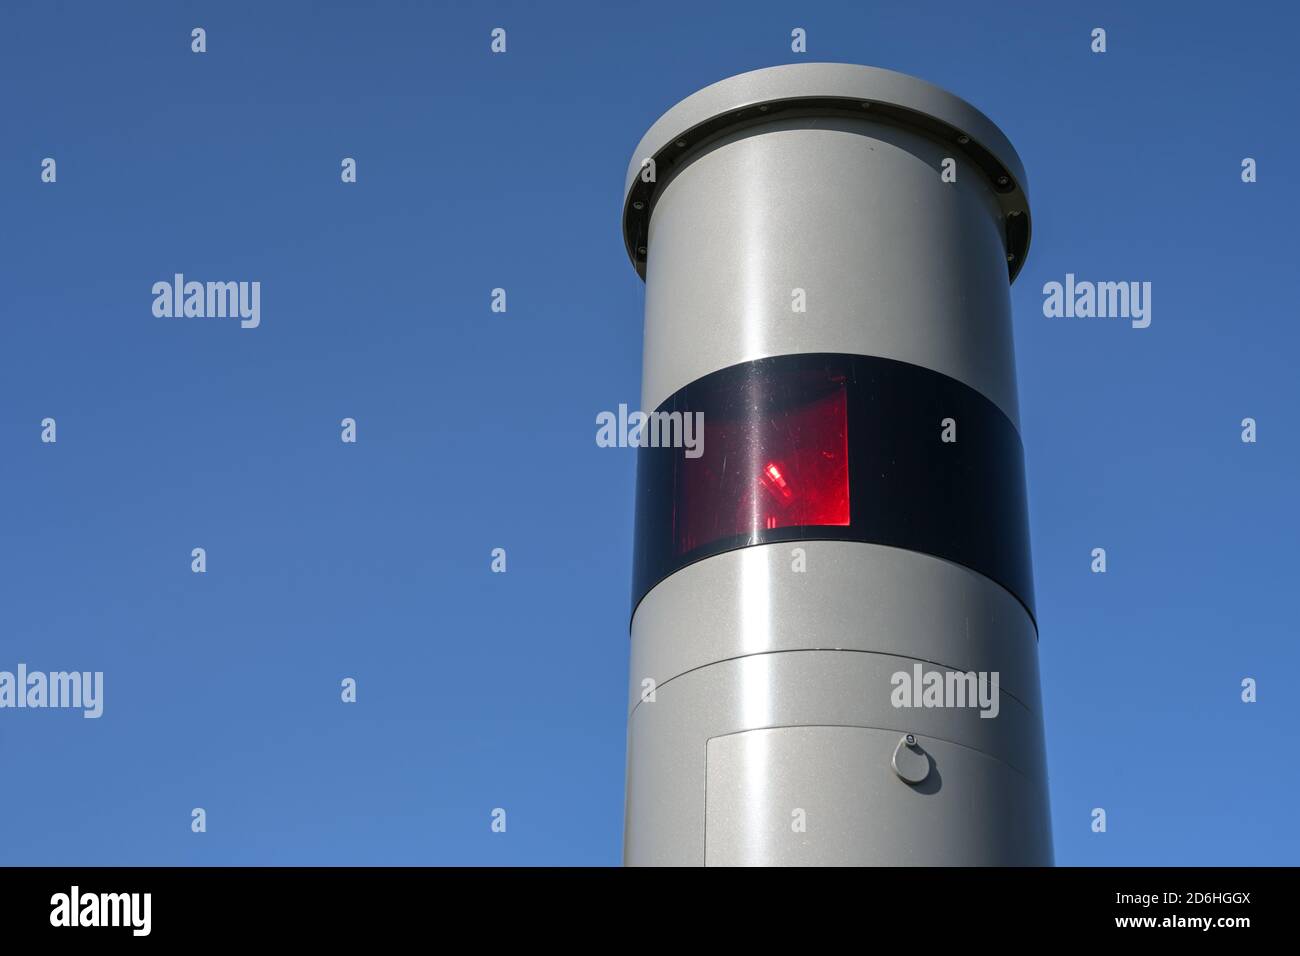 Parte di un limite di velocità stazionario con radar luminoso, flash rosso e telecamera, monitoraggio del traffico contro velocità pericolose, che può causare Foto Stock